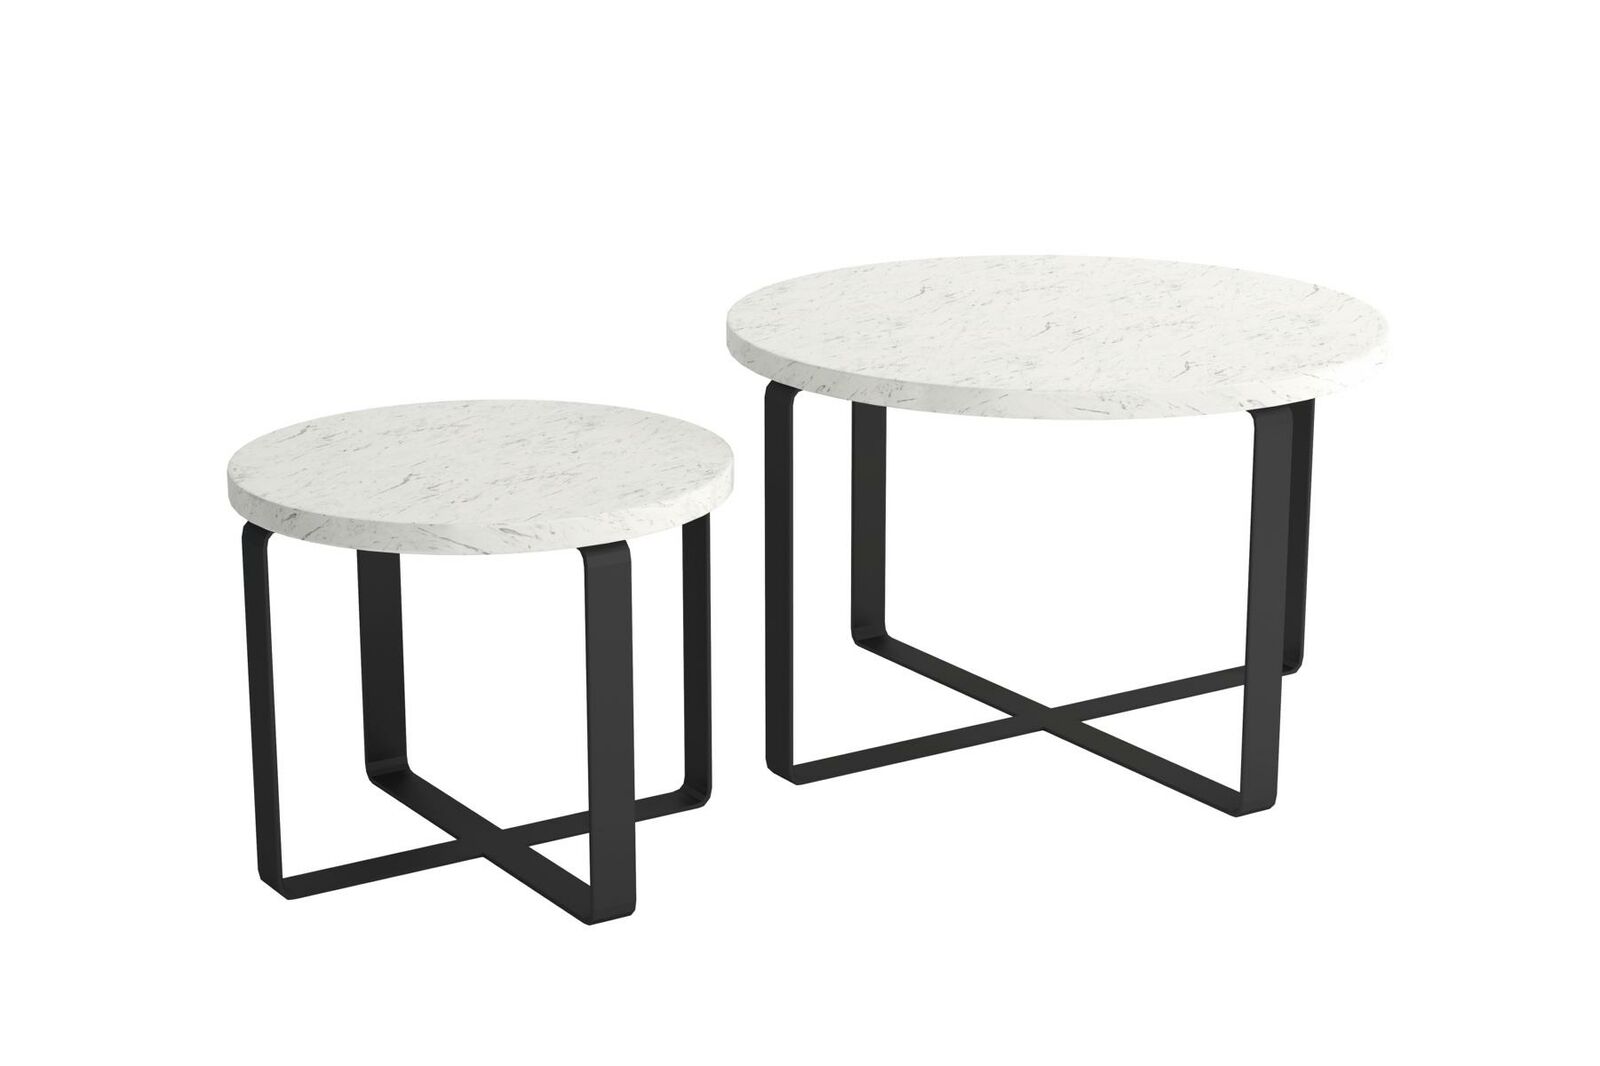 Rund Luxus Tisch Couchtisch Design Tische Style Möbel Wohnzimmer